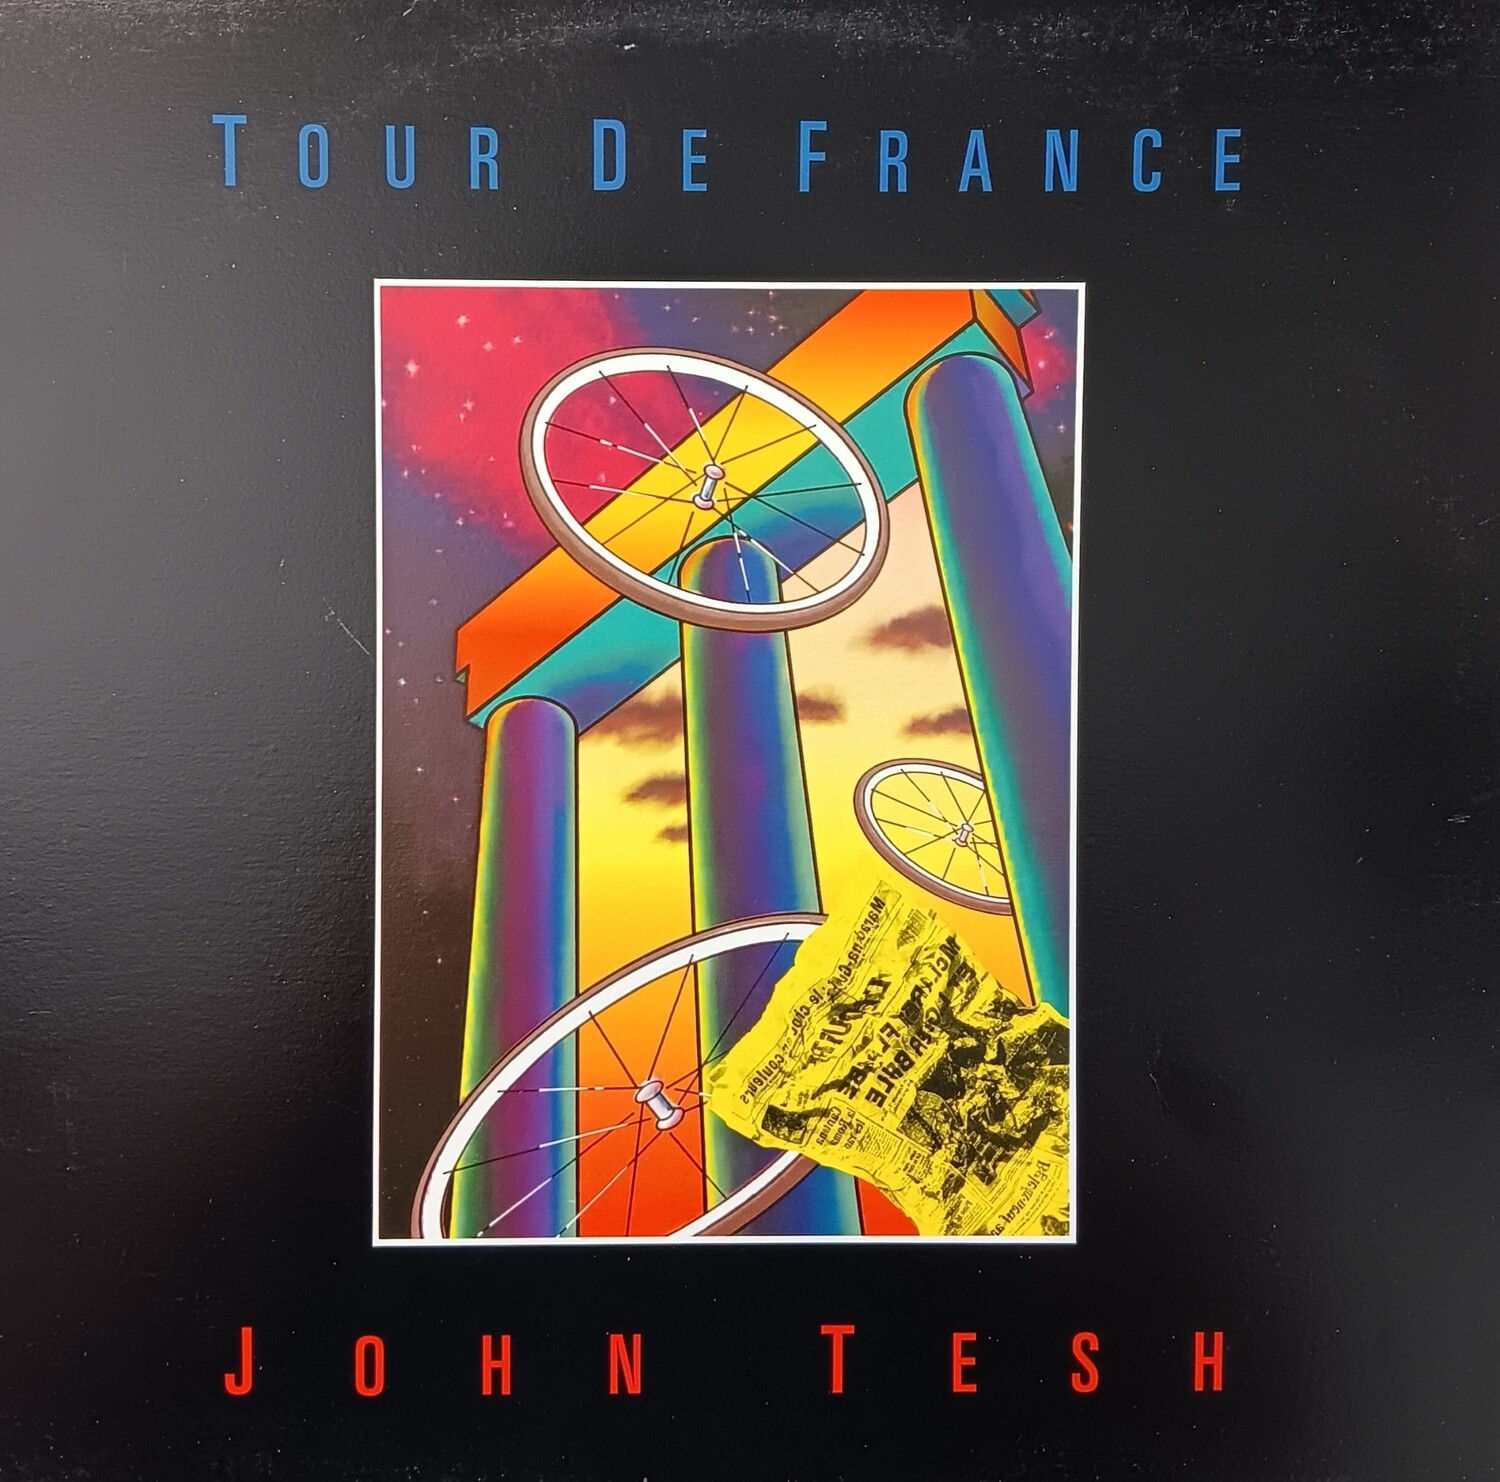 John Tesh - Tour de France